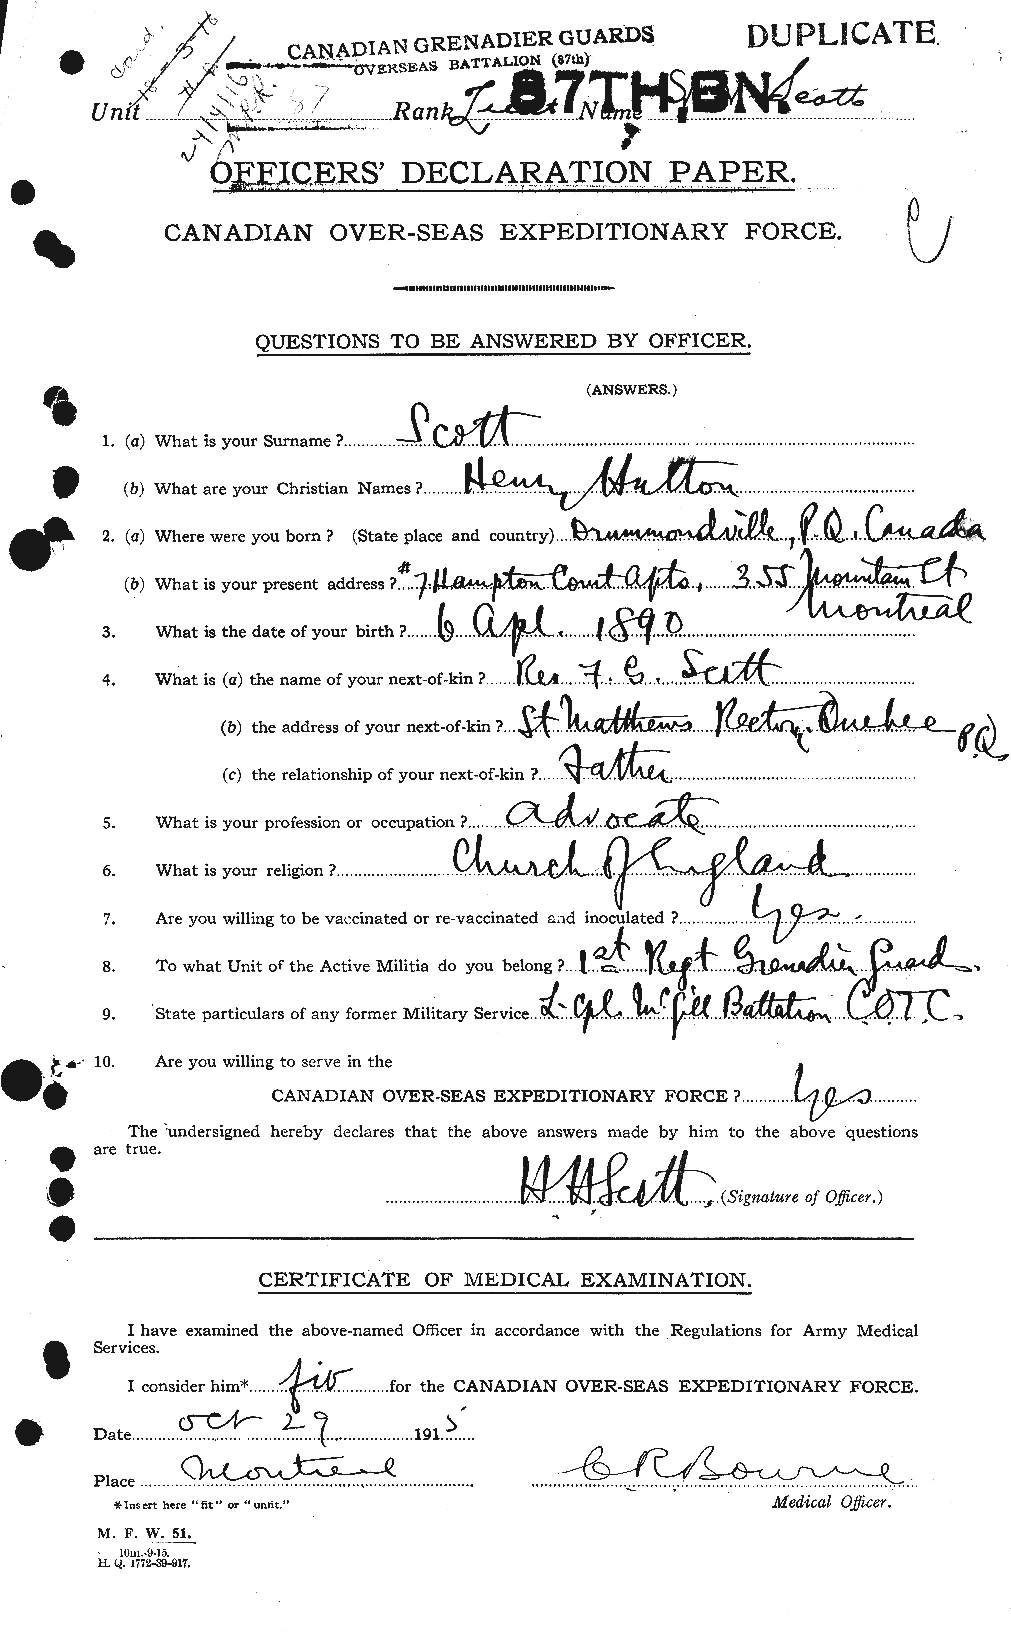 Dossiers du Personnel de la Première Guerre mondiale - CEC 086054a